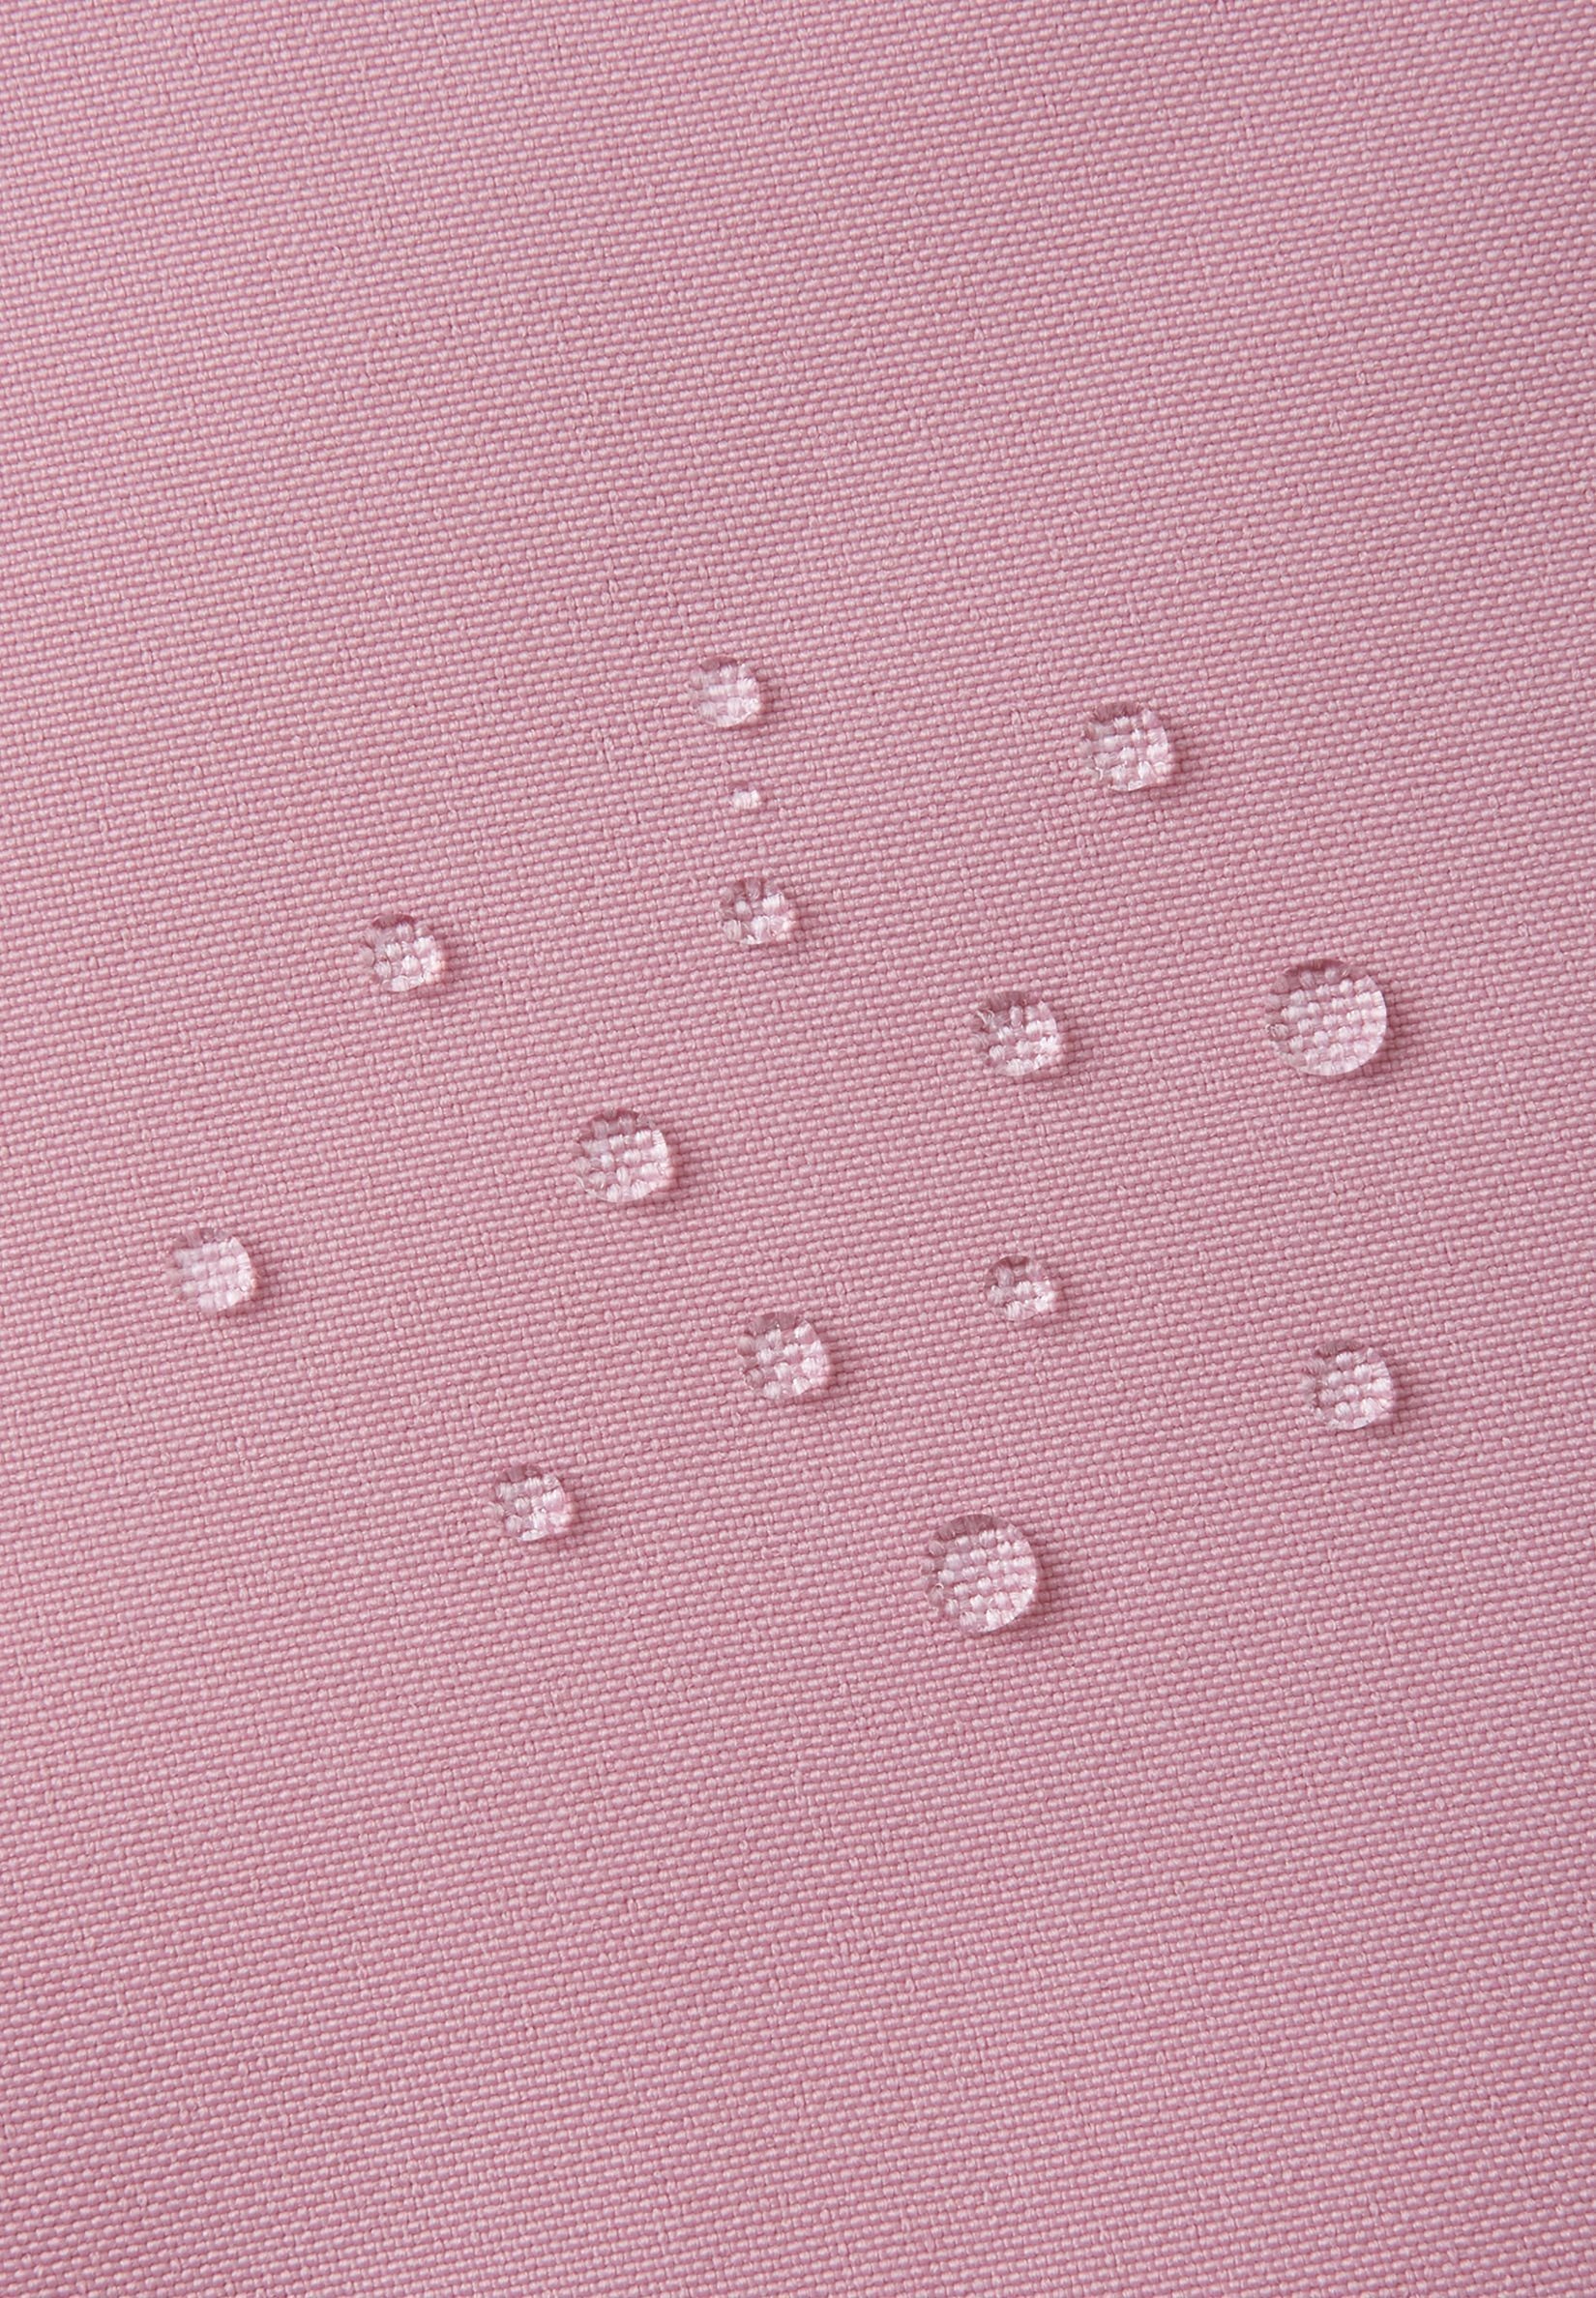 Pink wärmend Futtermaterial Trondheim und reima atmungsaktiv Schneeoverall wasserdicht, bluesign®-zertifiziertes Grey und Haupt-